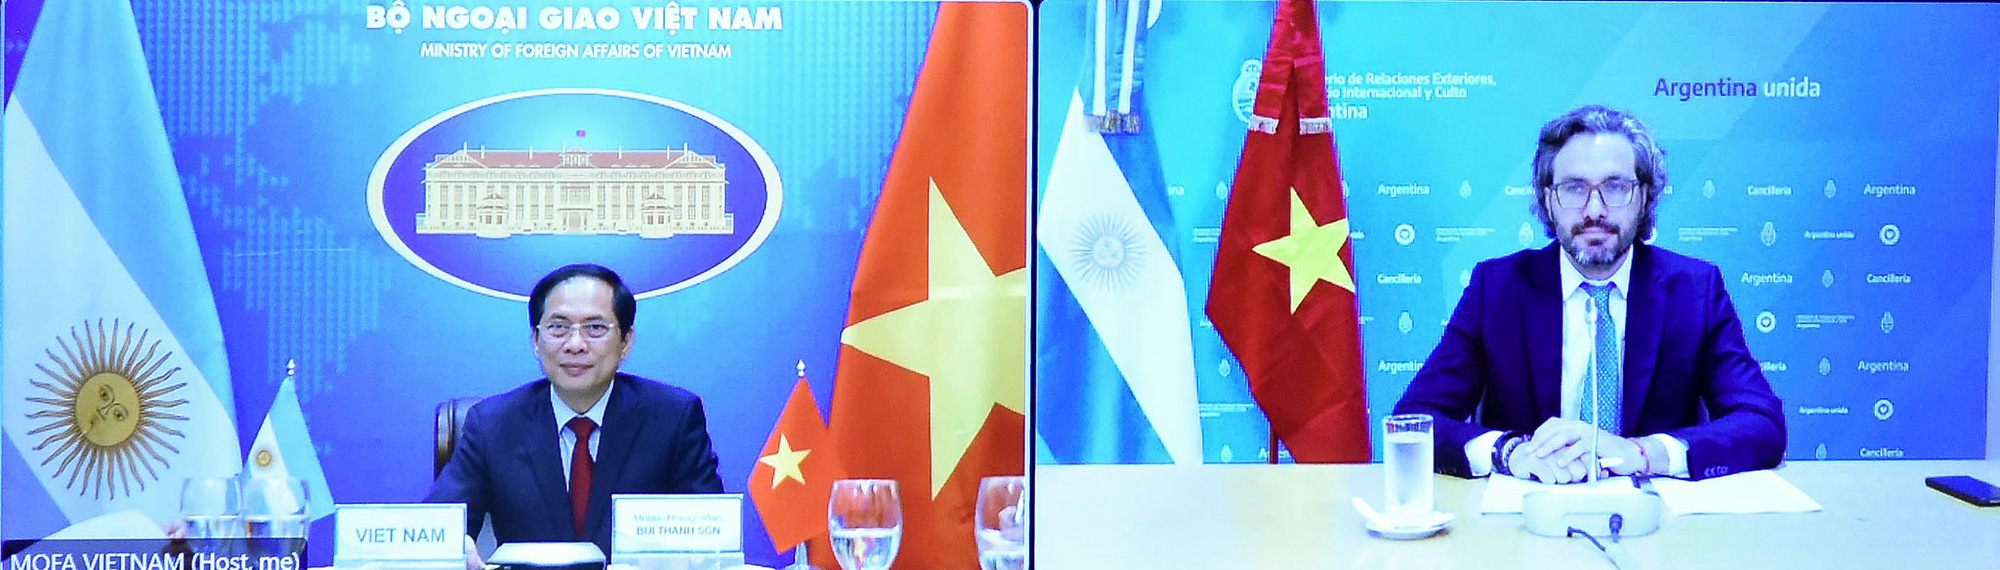 Đề nghị Argentina tạo điều kiện cho nông sản Việt Nam tiếp cận thị trường - Ảnh 1.